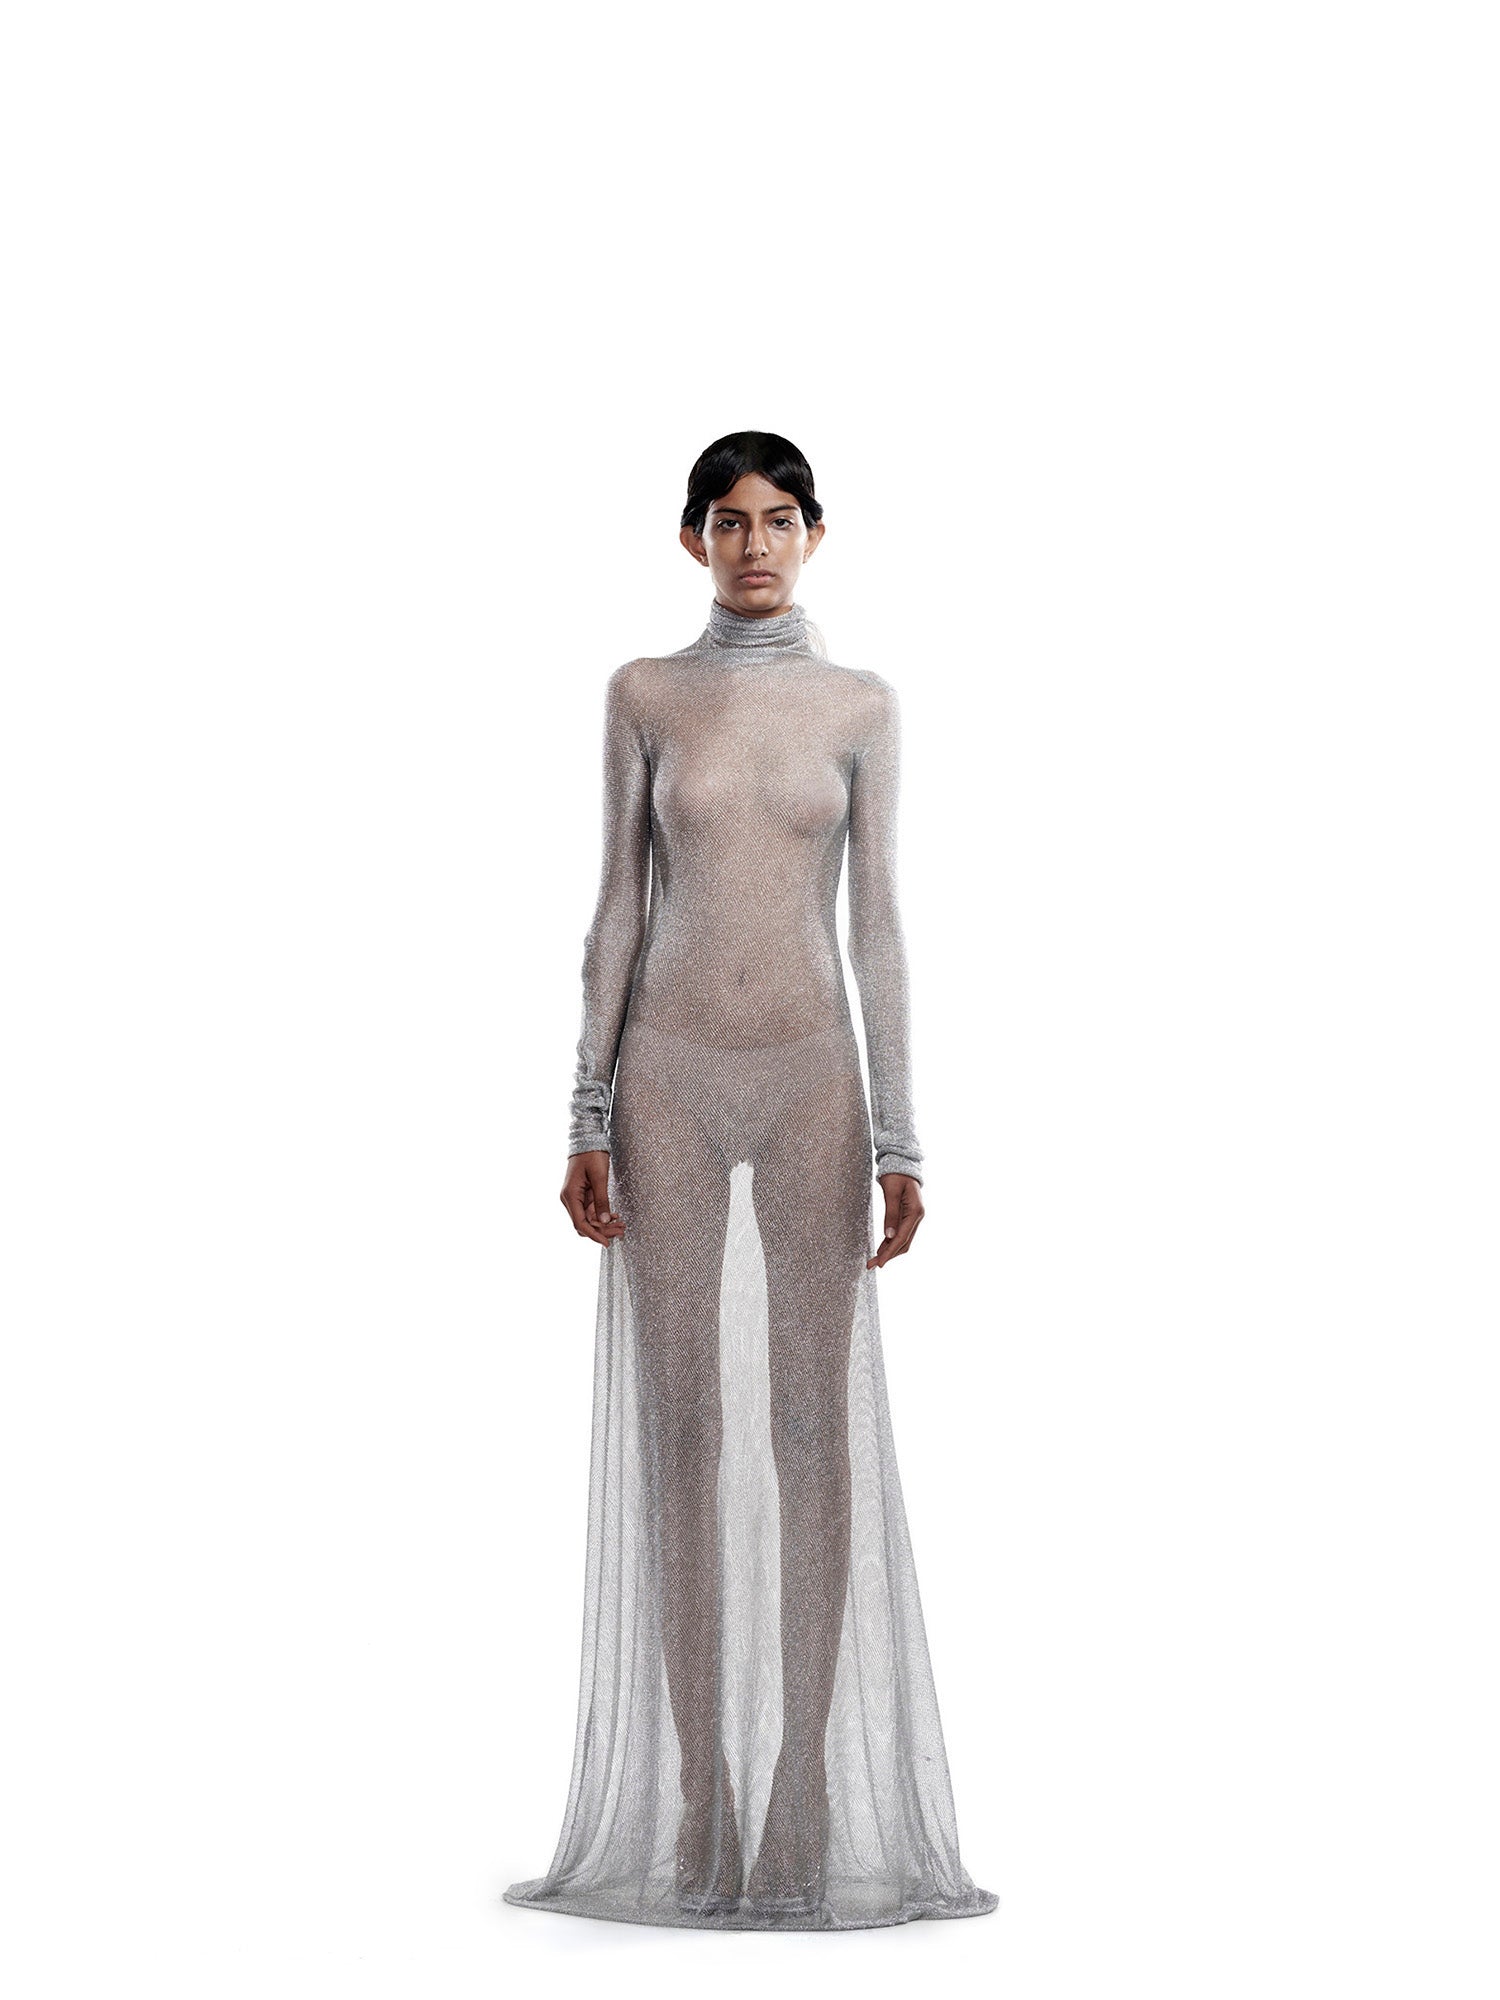 Silver mesh dress